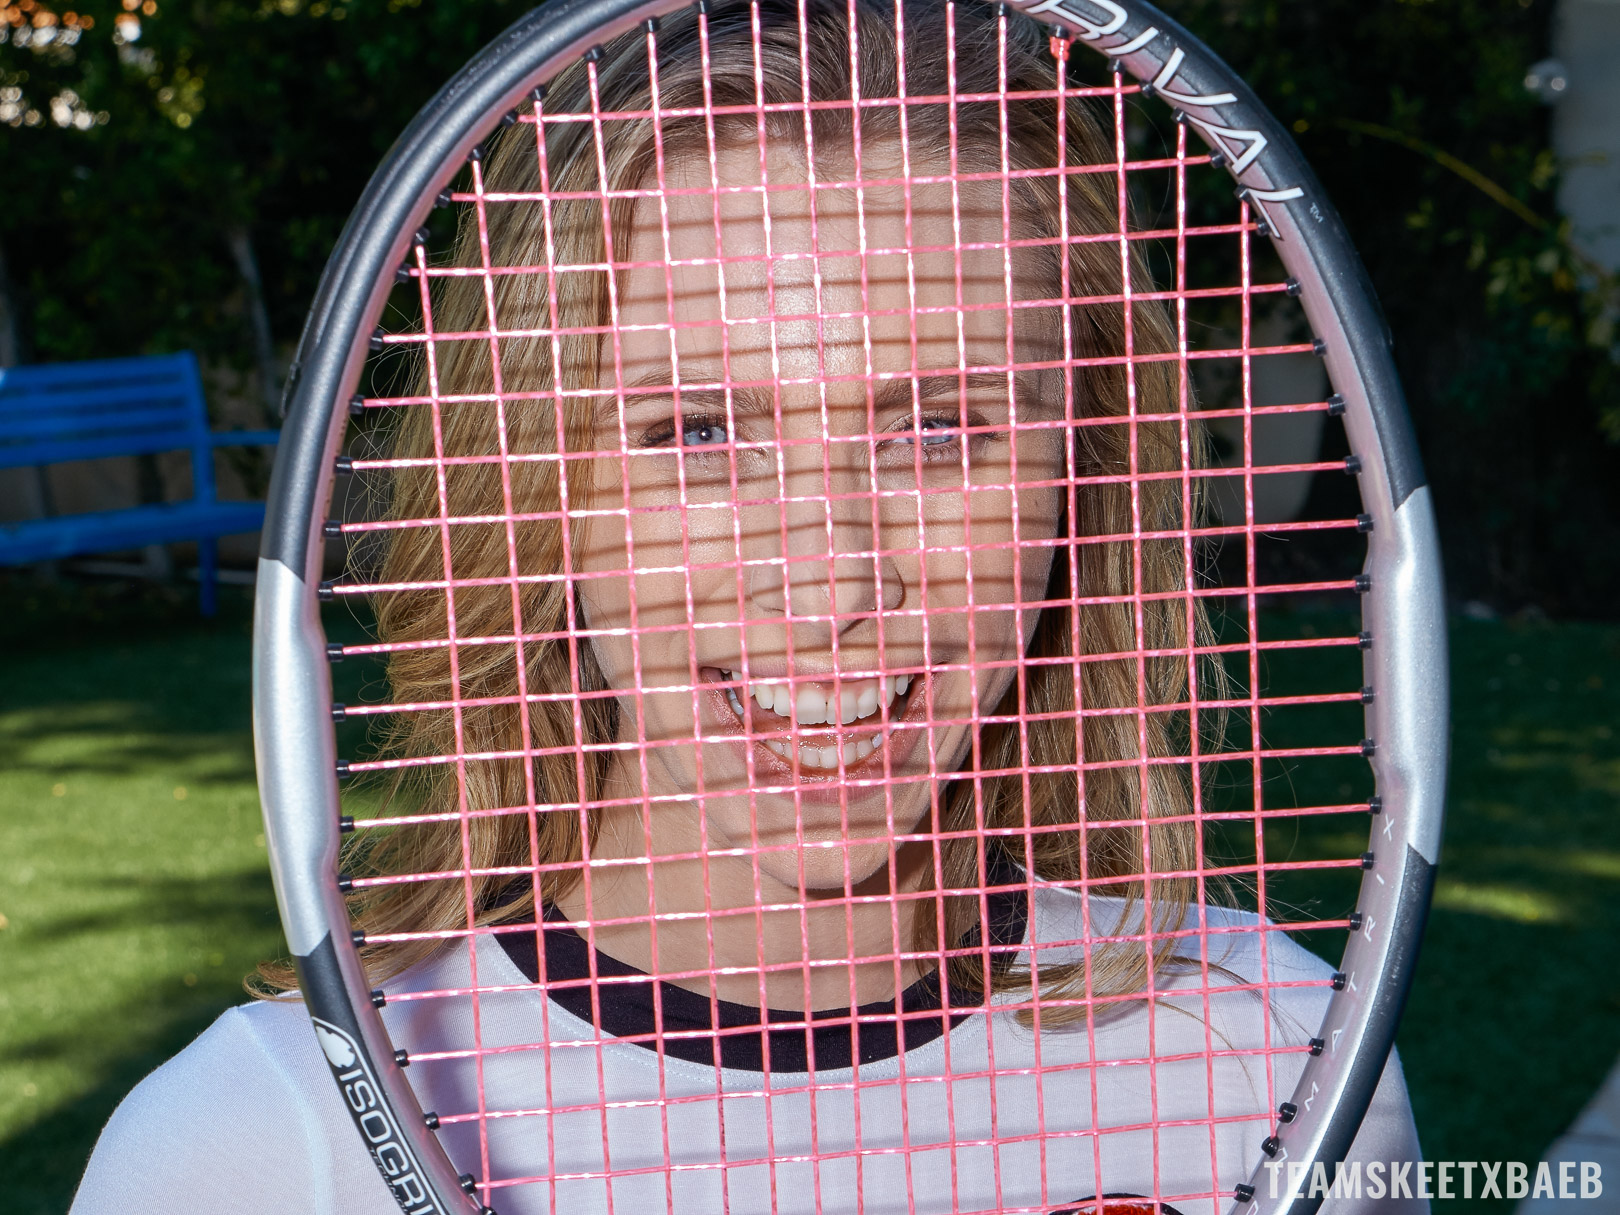 Anya Olsen Likes Her Tennis Training Sessions